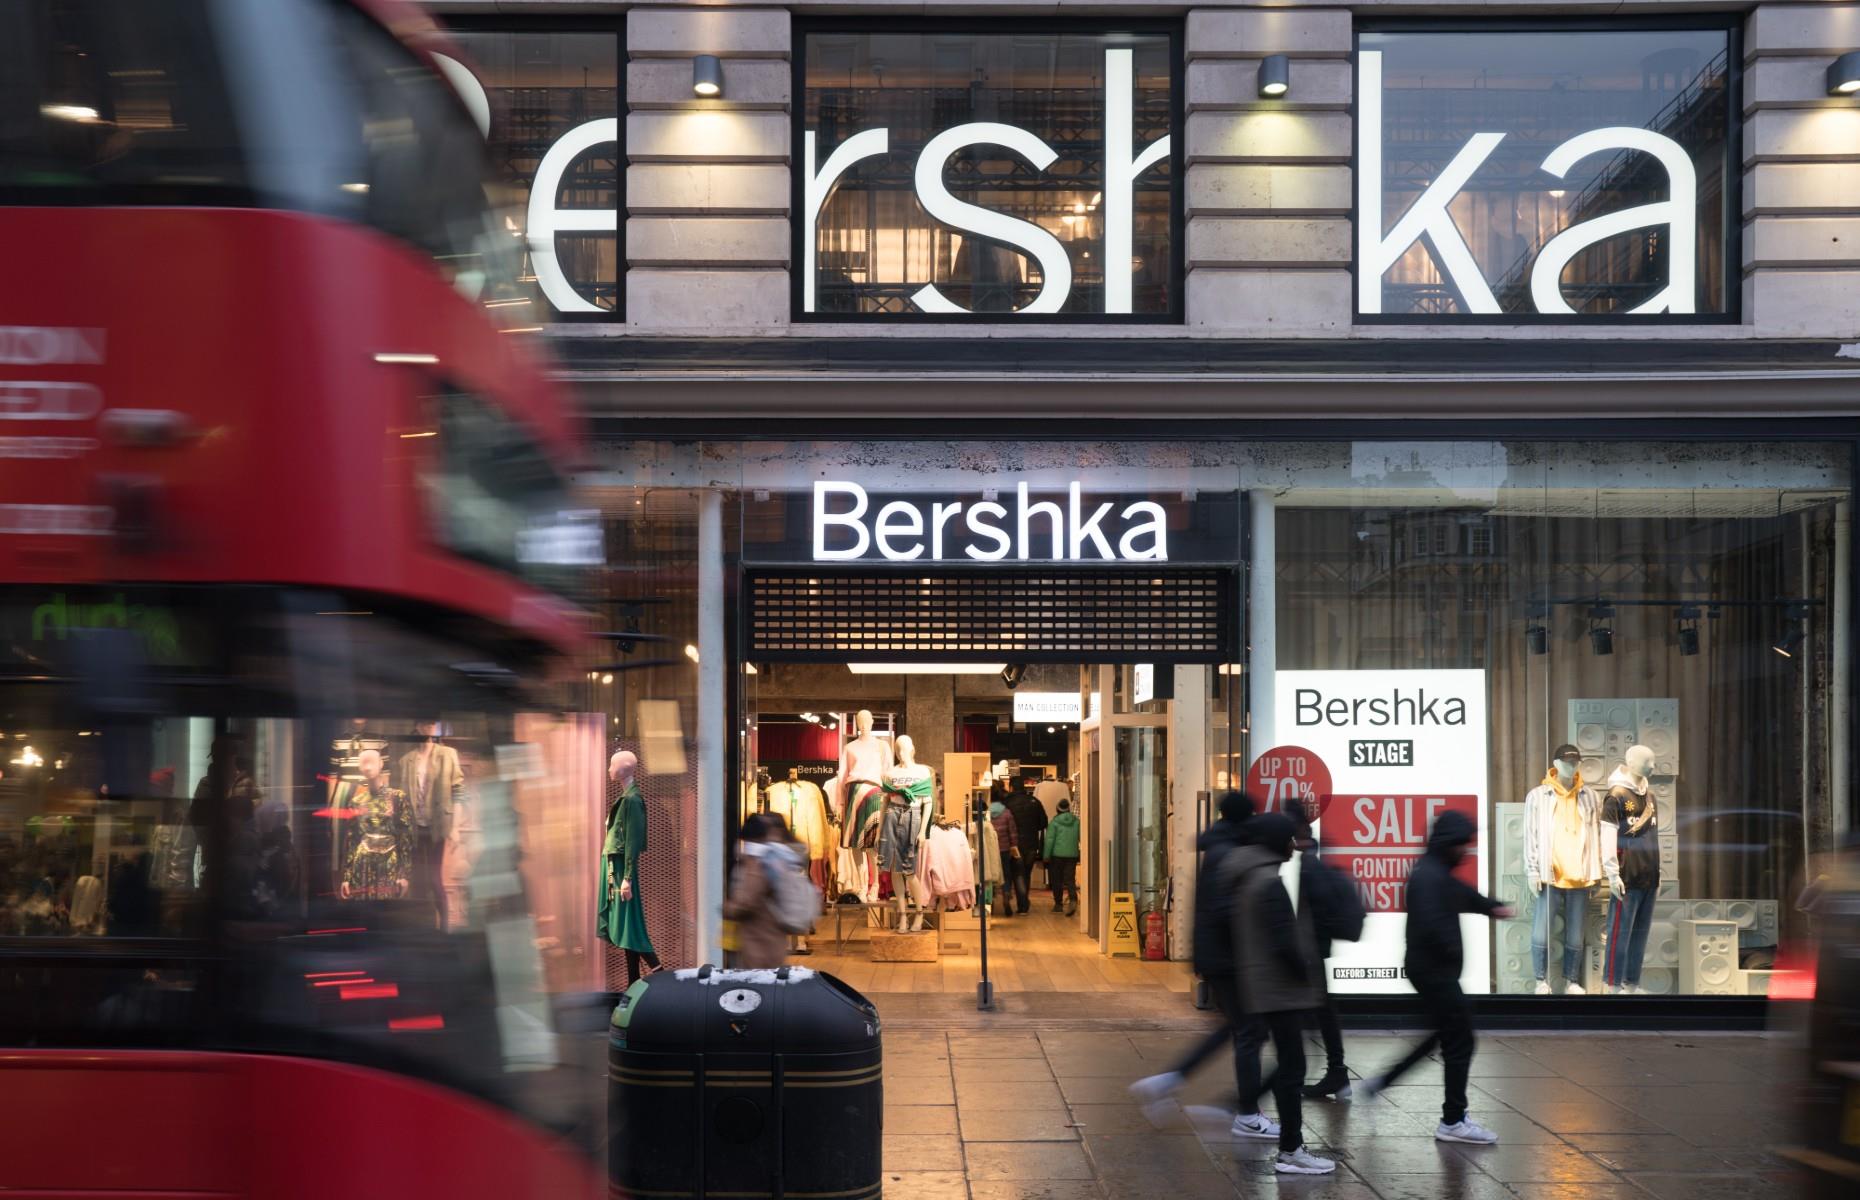 Inditex launches new Bershka brand